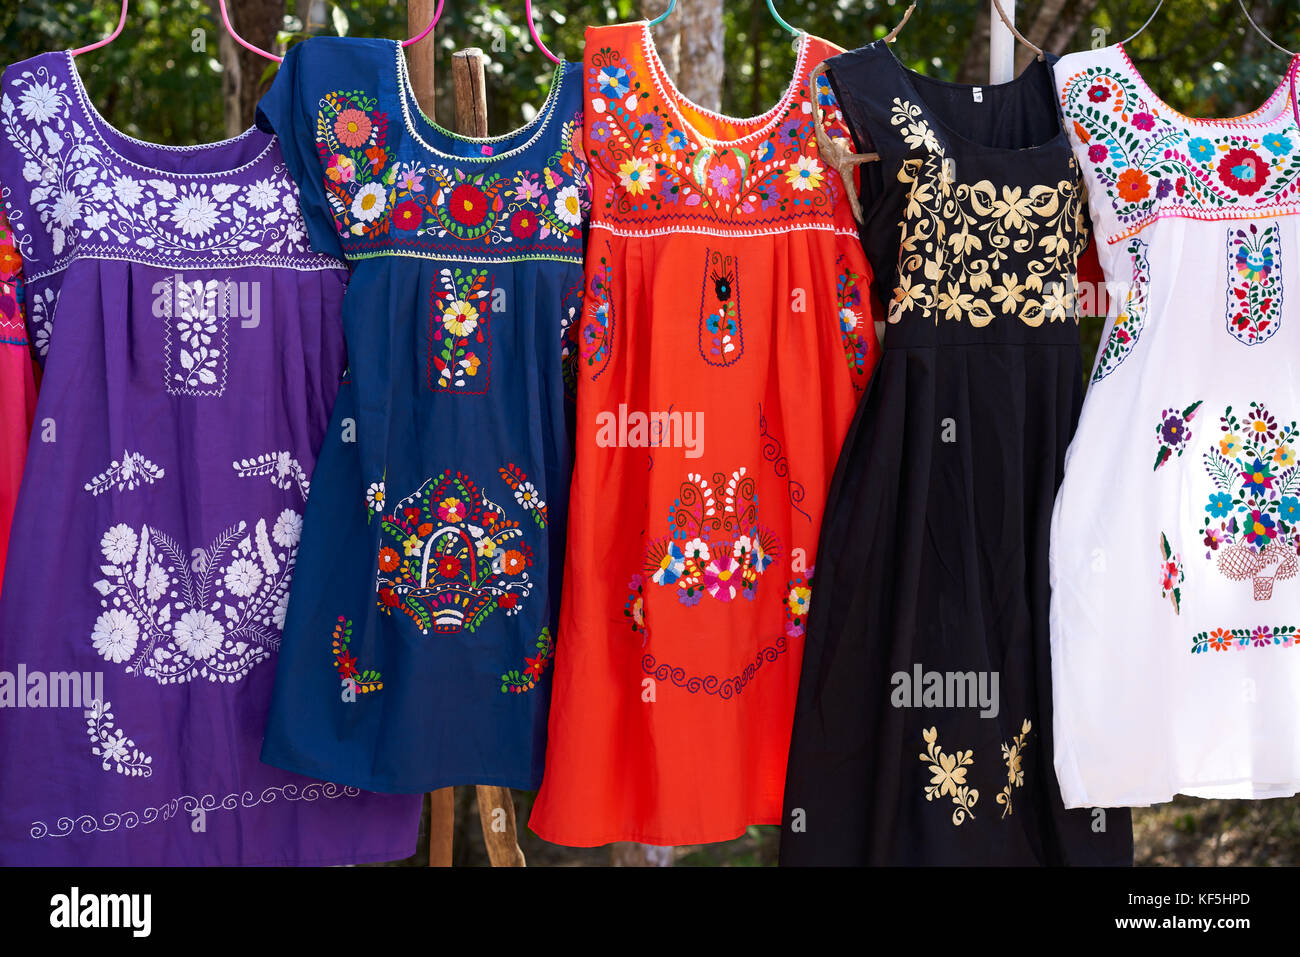 Chichen Itza Bestickte Kleider In Outdoor Shop Mexiko Yucatan Stockfotografie Alamy